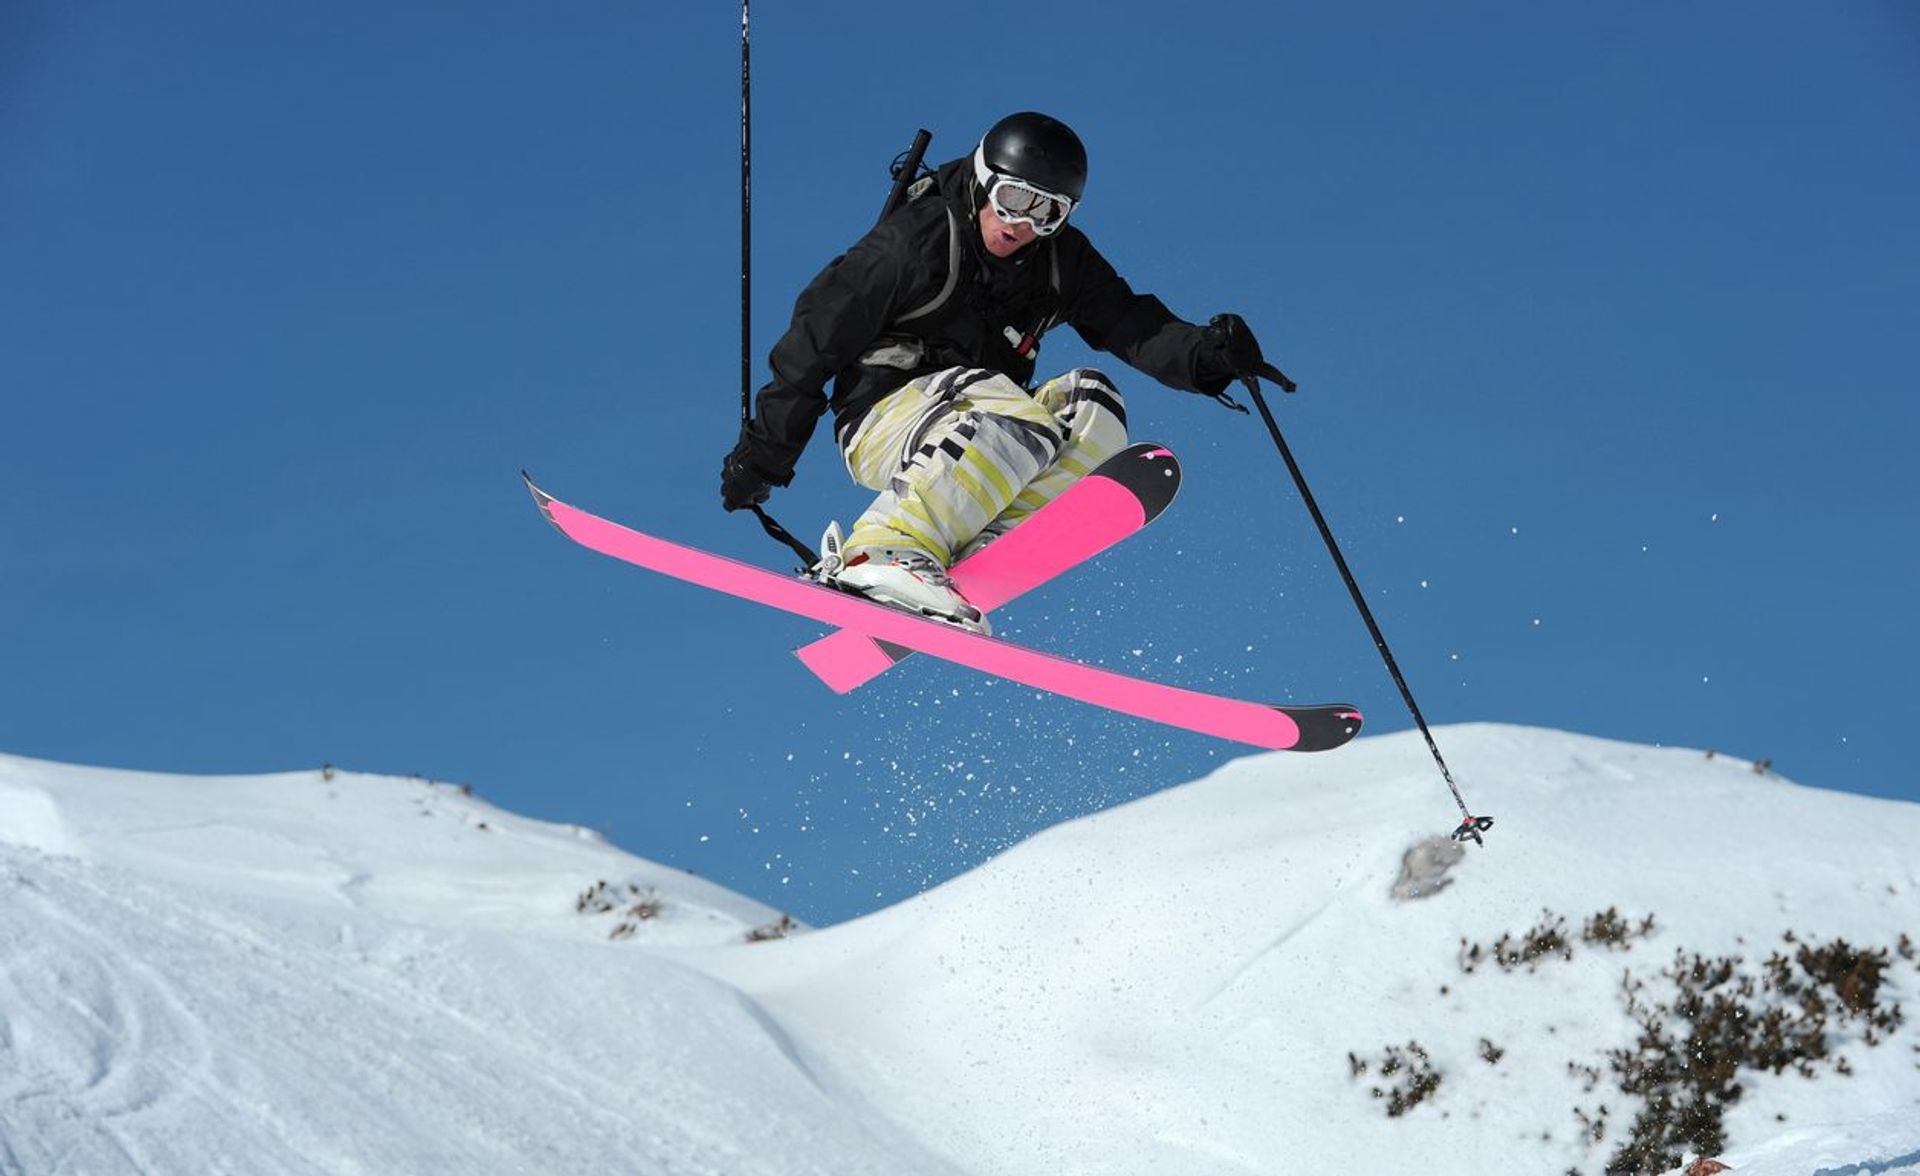 wintersport essentials skier skien gewoonvoorhem